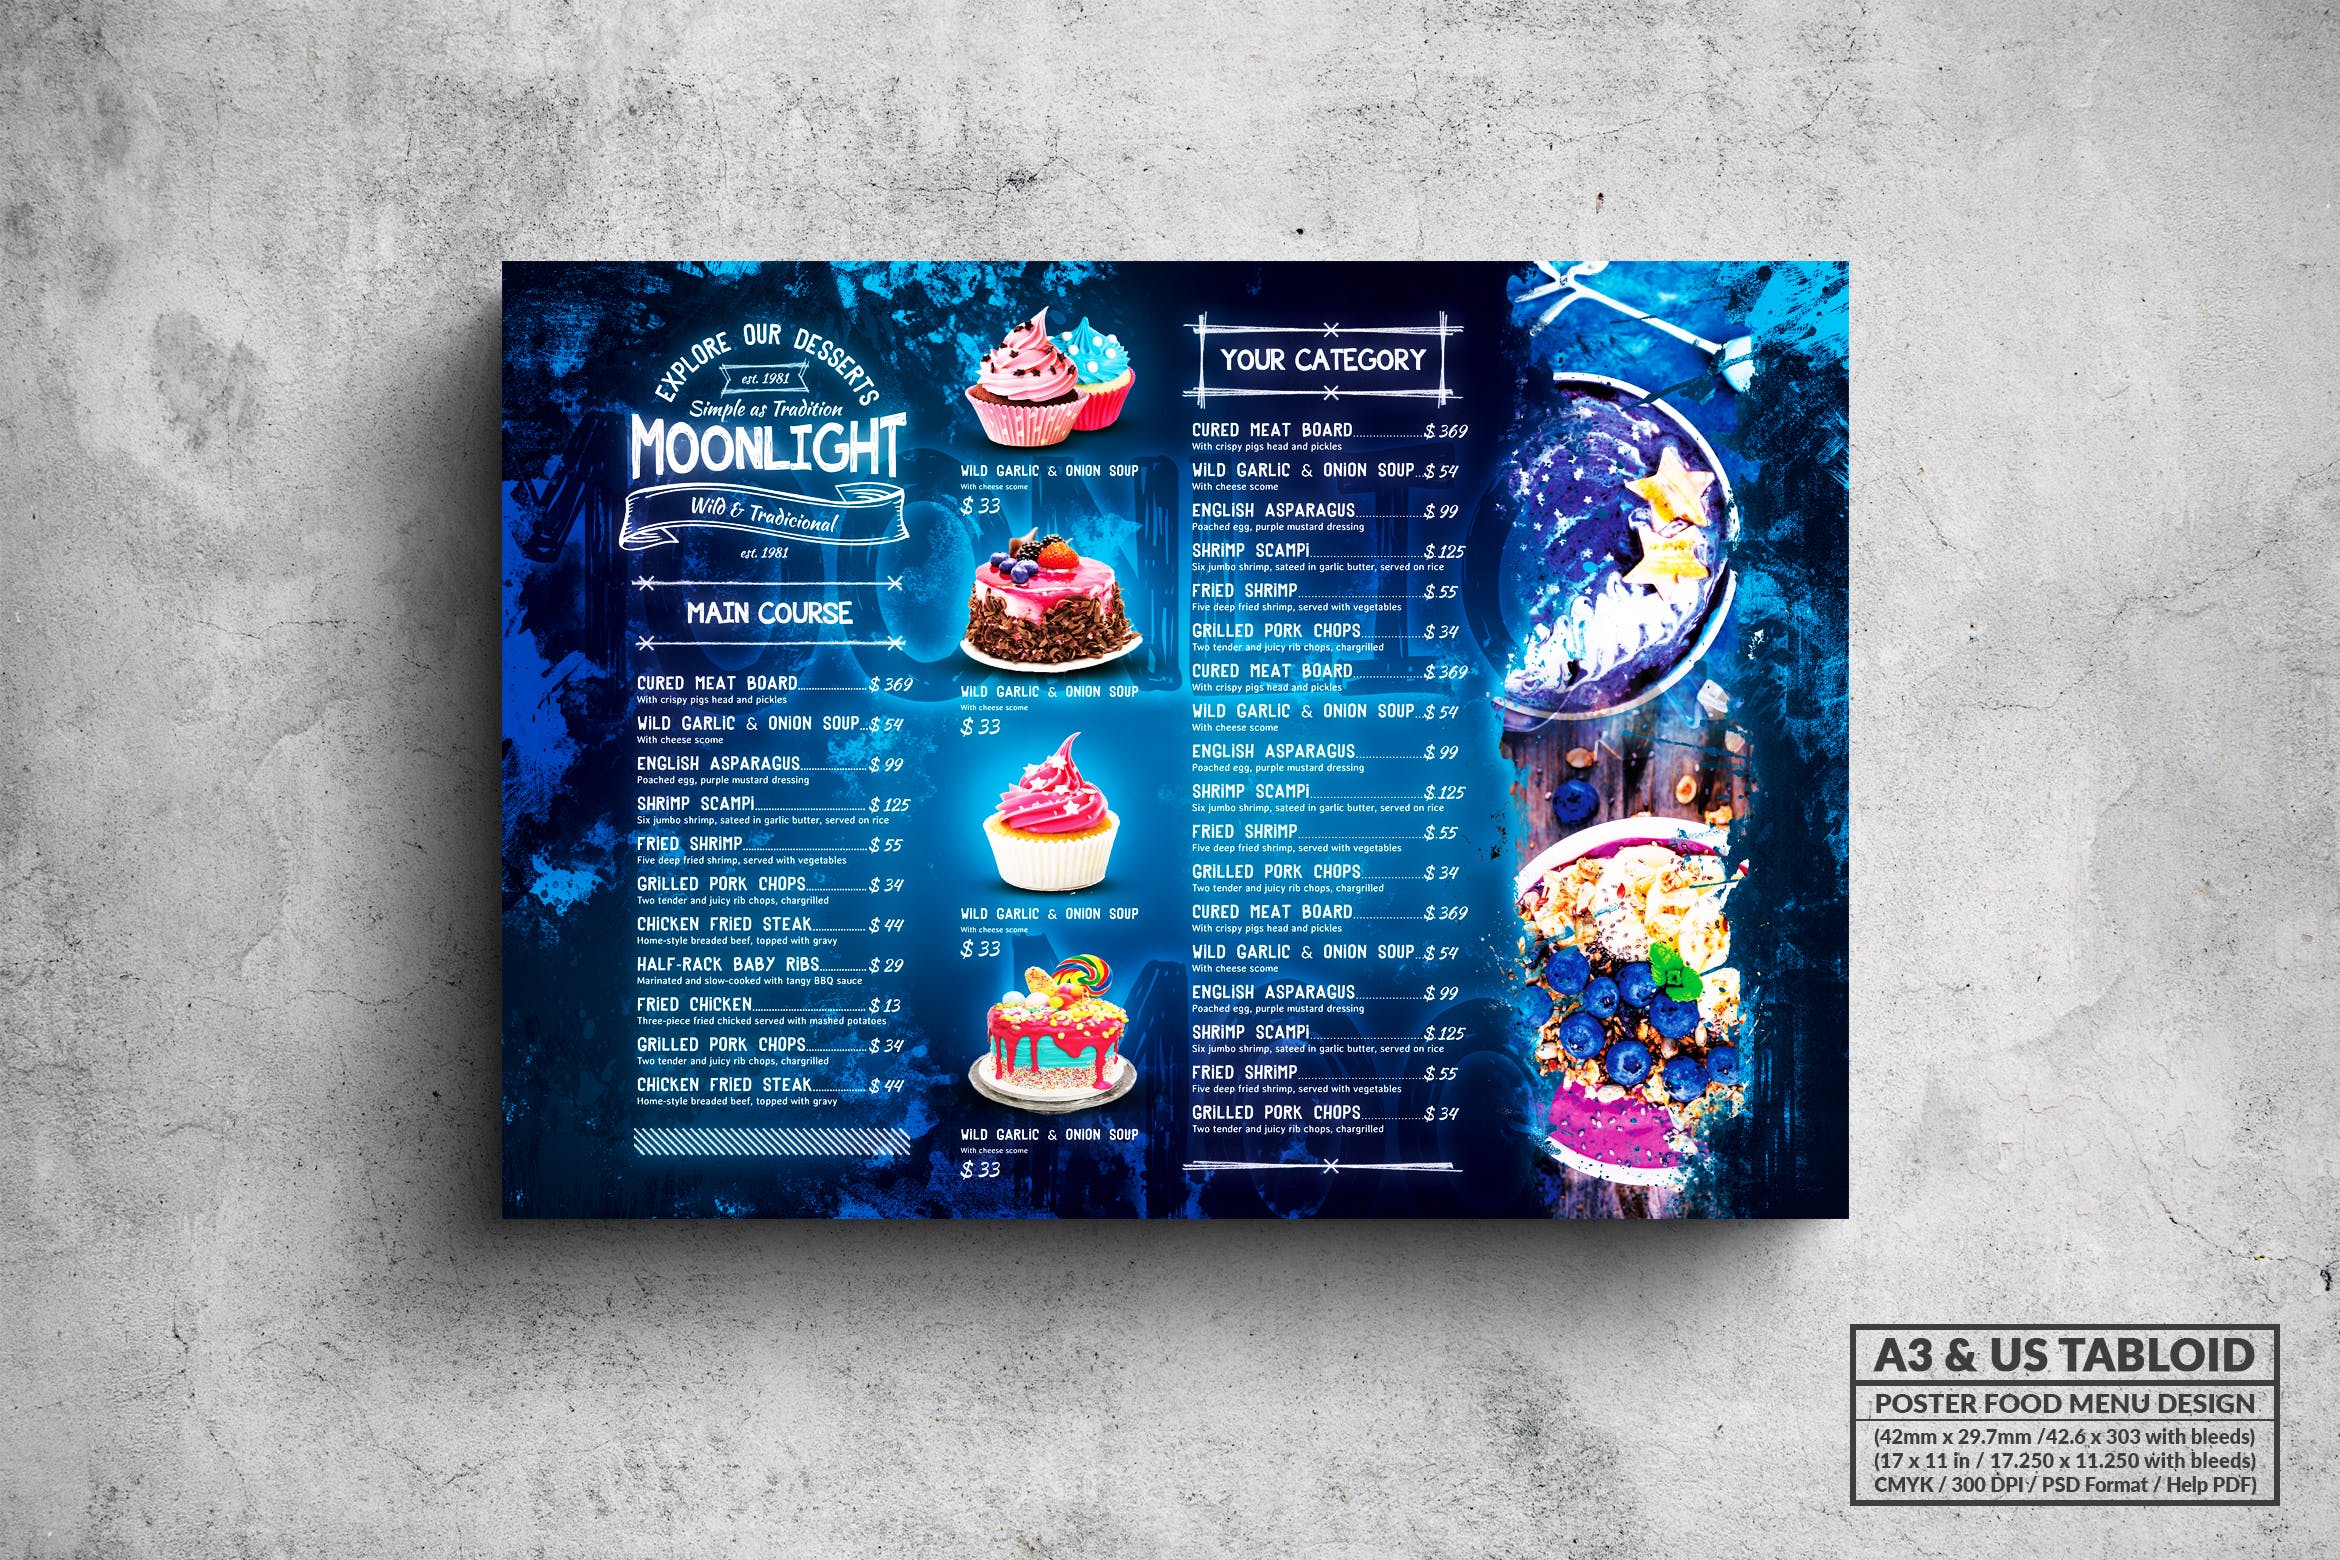 面包蛋糕店菜单海报PSD素材16图库精选模板 Moonlight Bakery Menu – A3 & US Tabloid Poster插图